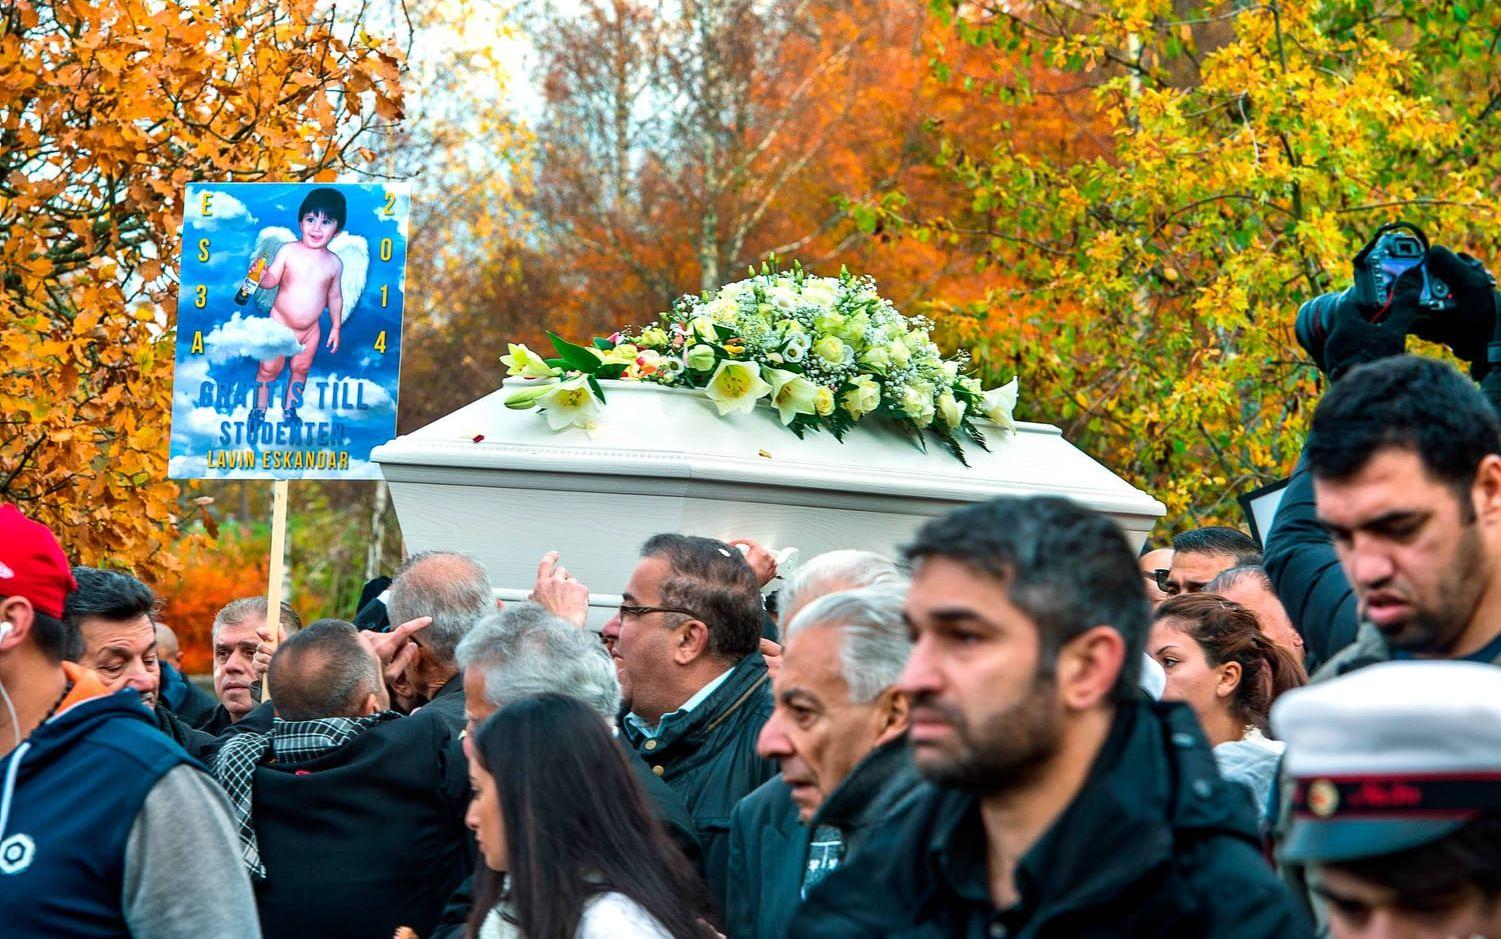 Många människor var på plats under begravningen av elevassistenten Lavin Eskandar. Bild: Stefan Bennhage